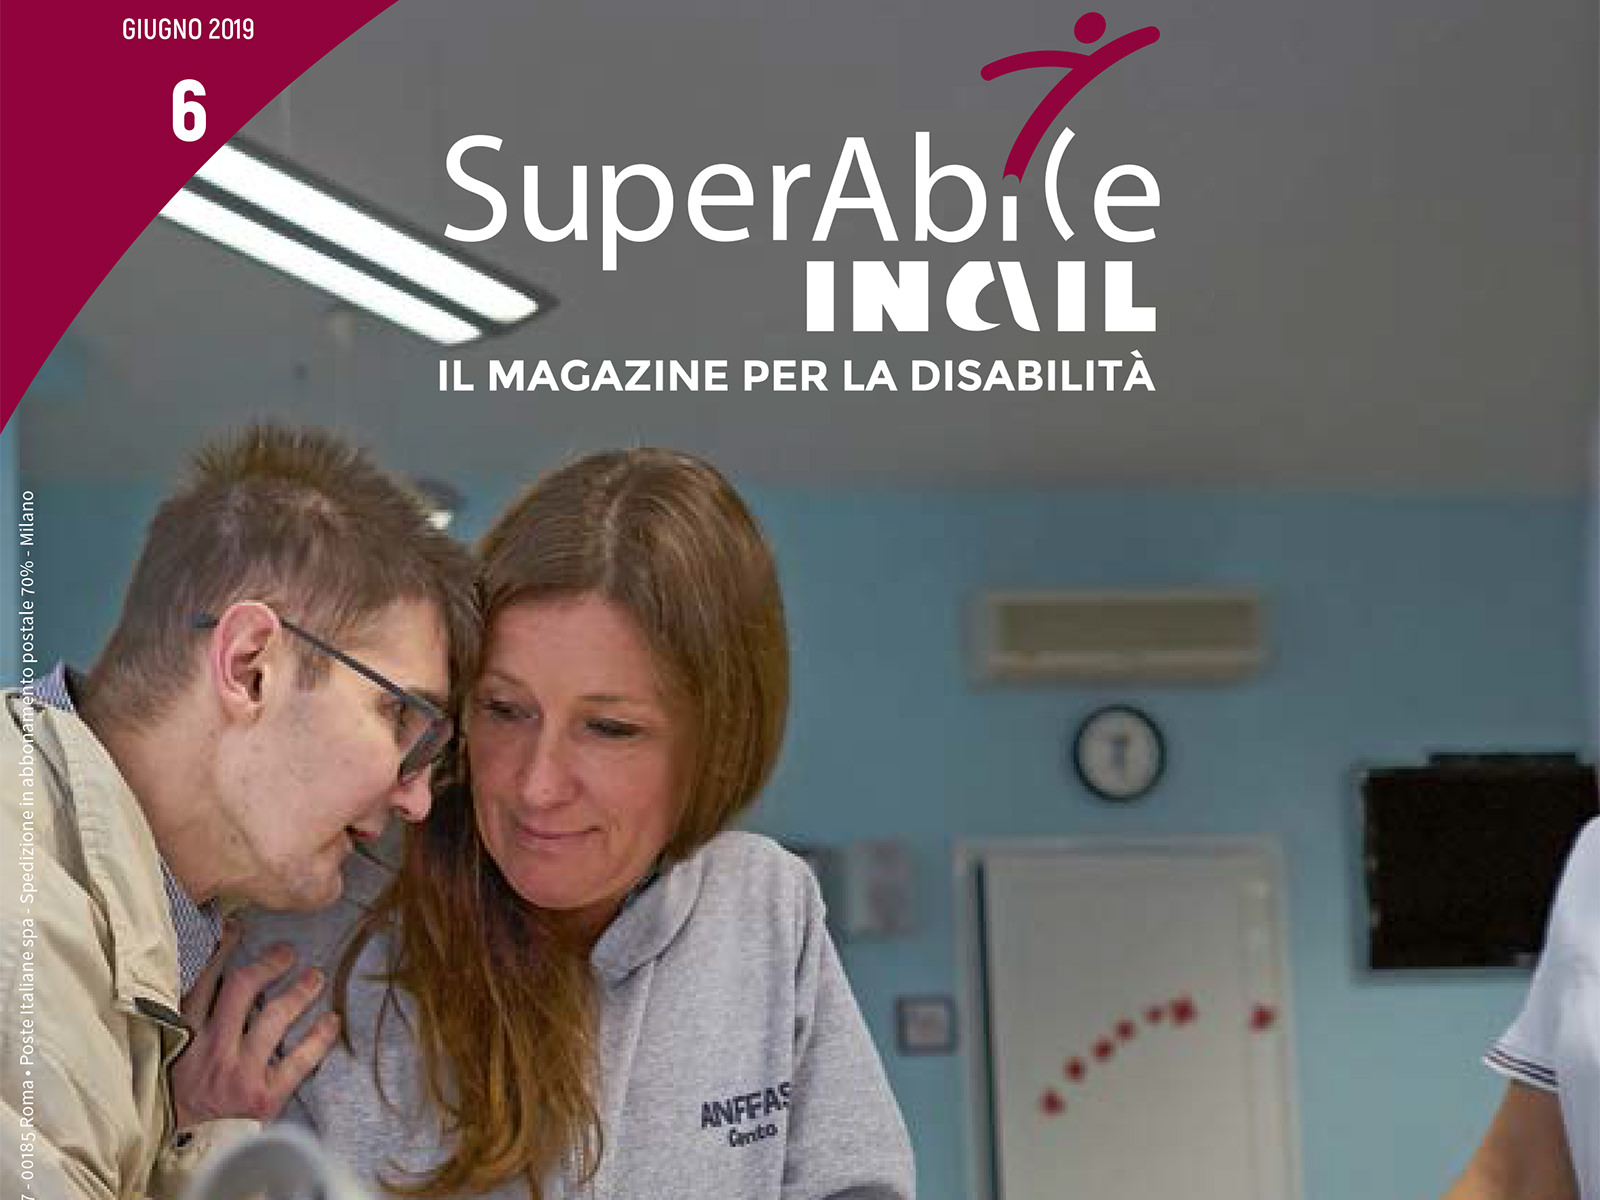 Il magazine SuperAbile INAIL dedica un lungo articolo alle spiagge ad alta accessibilità nel numero di giugno 2019